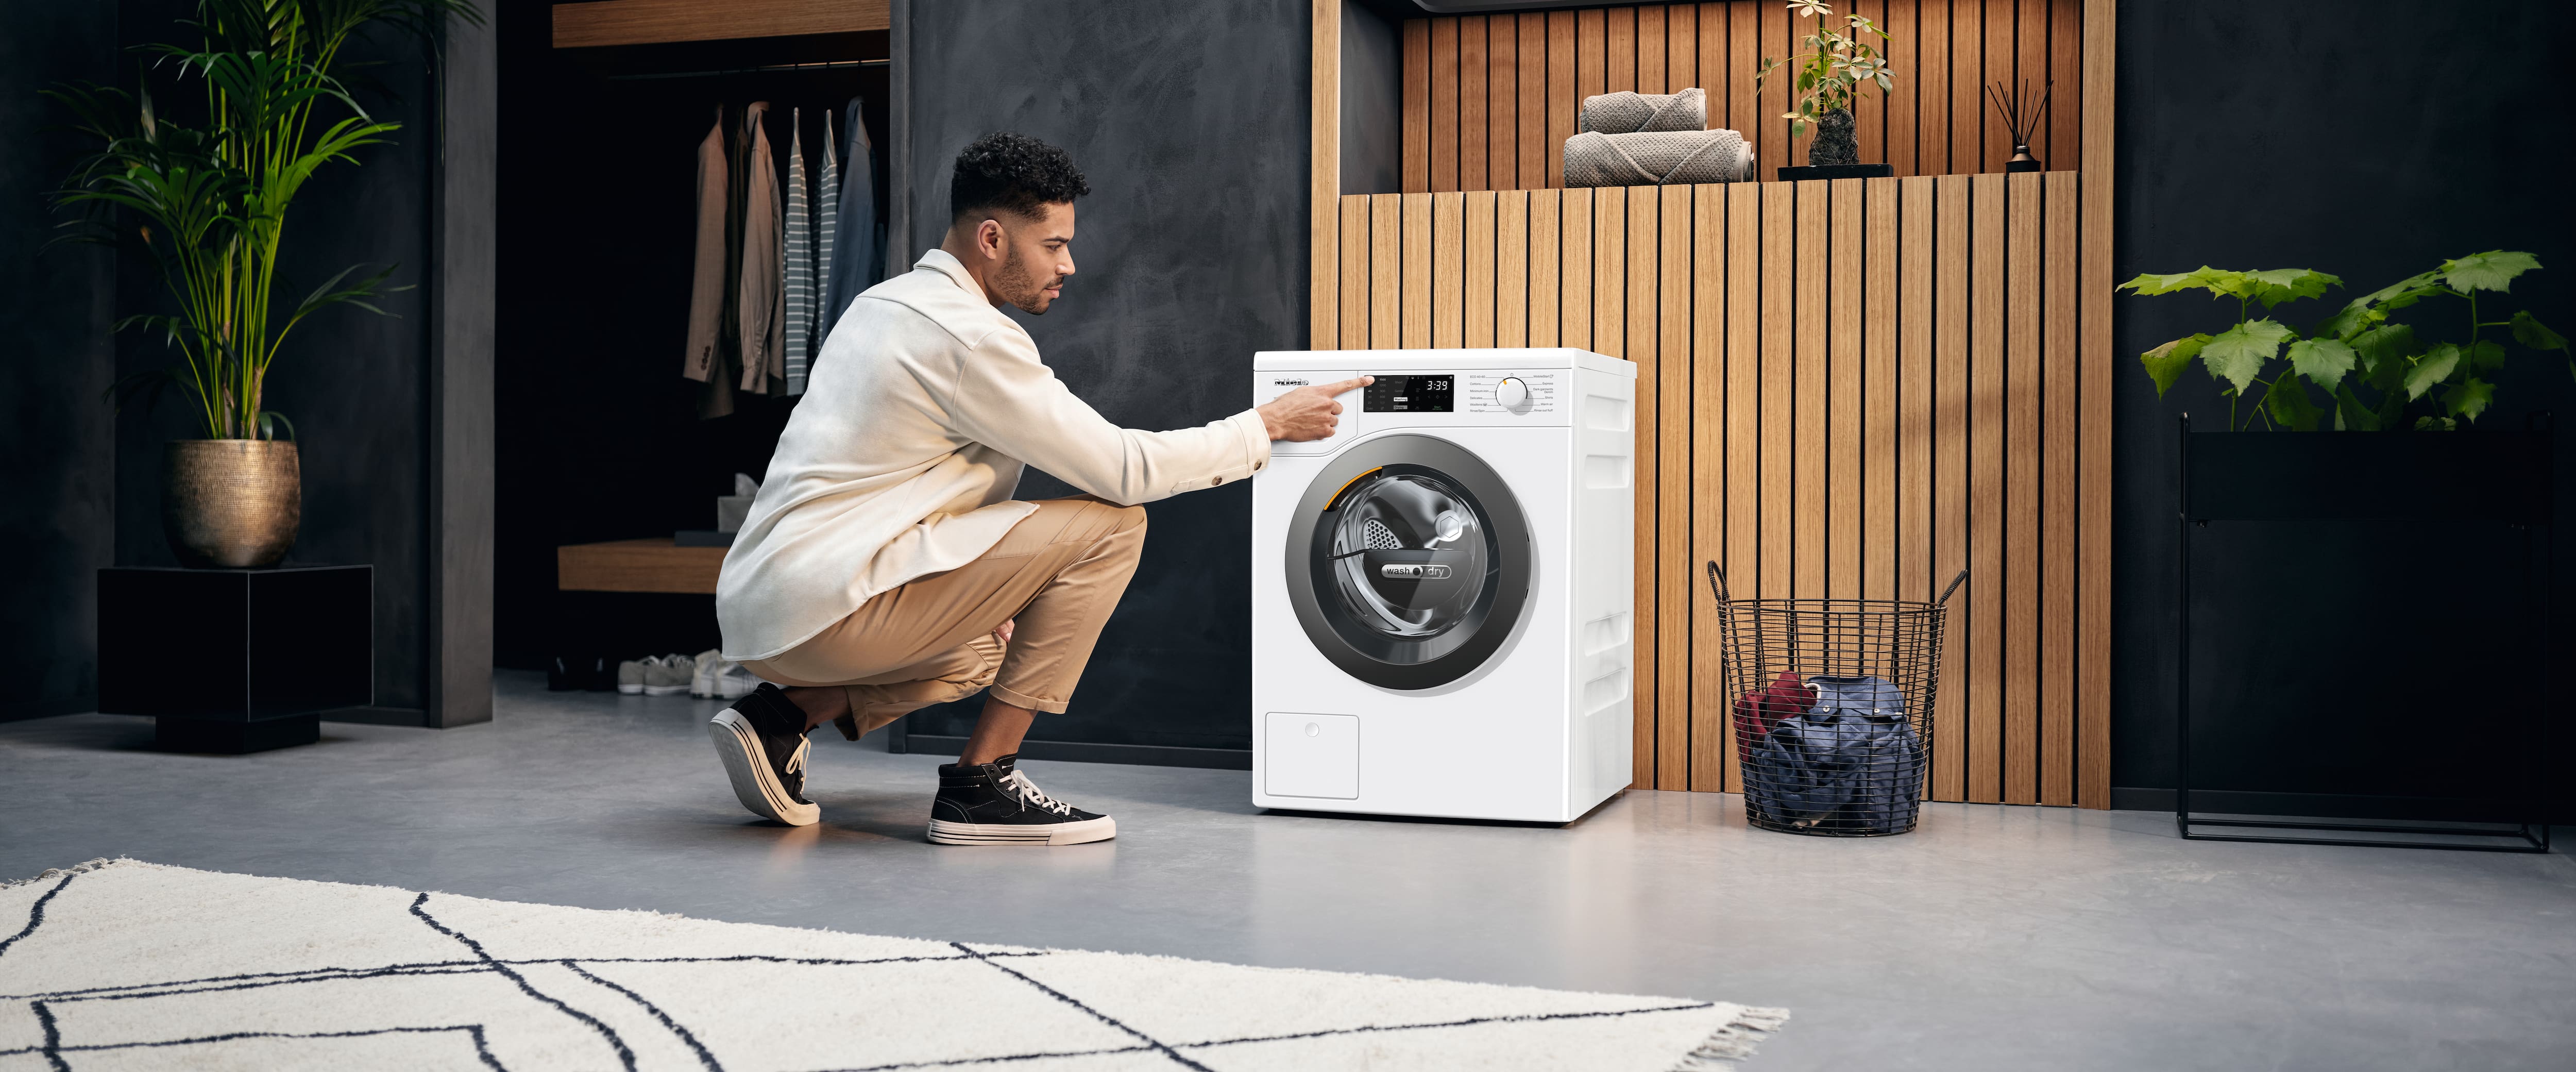 TEKA ビルトイン洗濯機 LI5 1481 乾燥機能なし 設置可能エリア限定